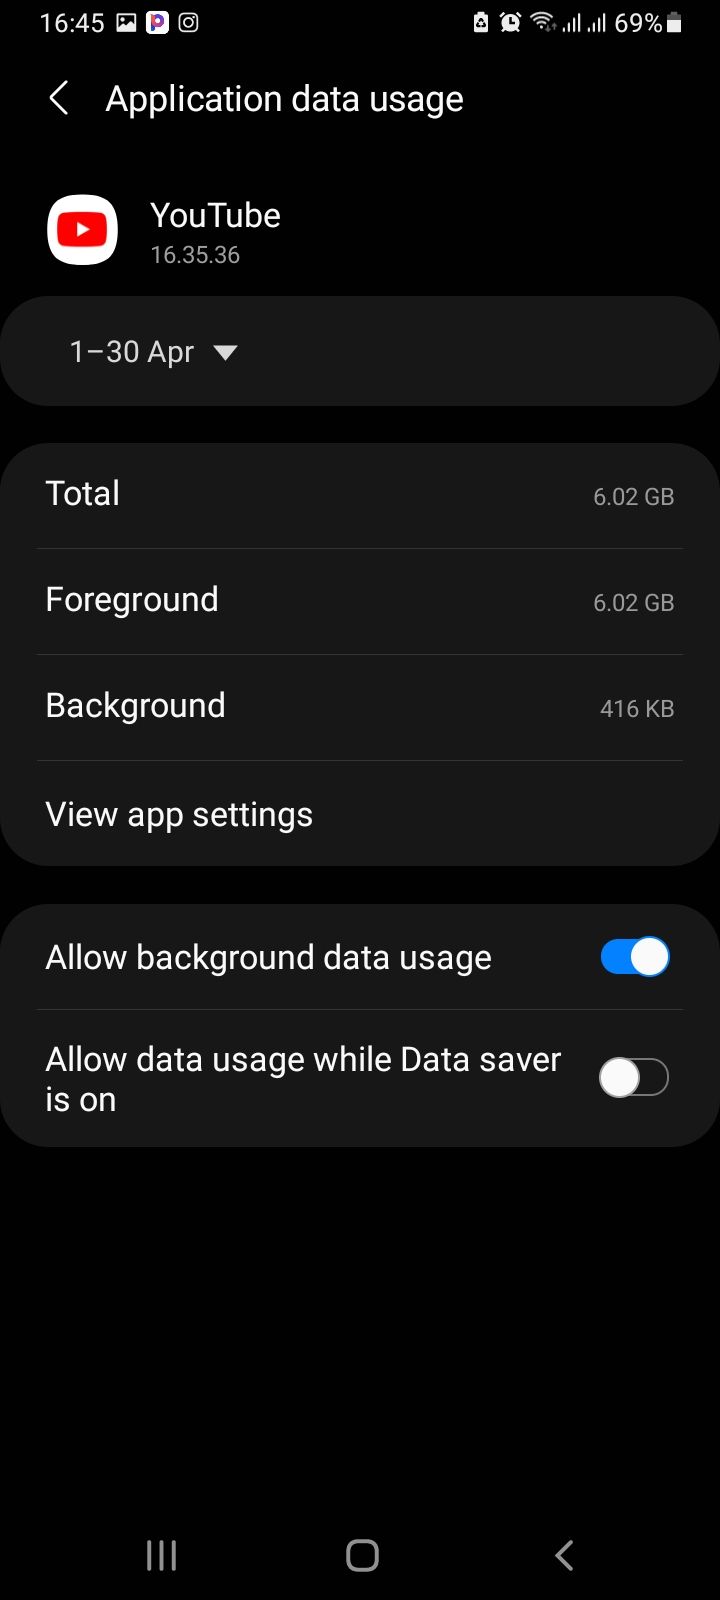 App data usage menu